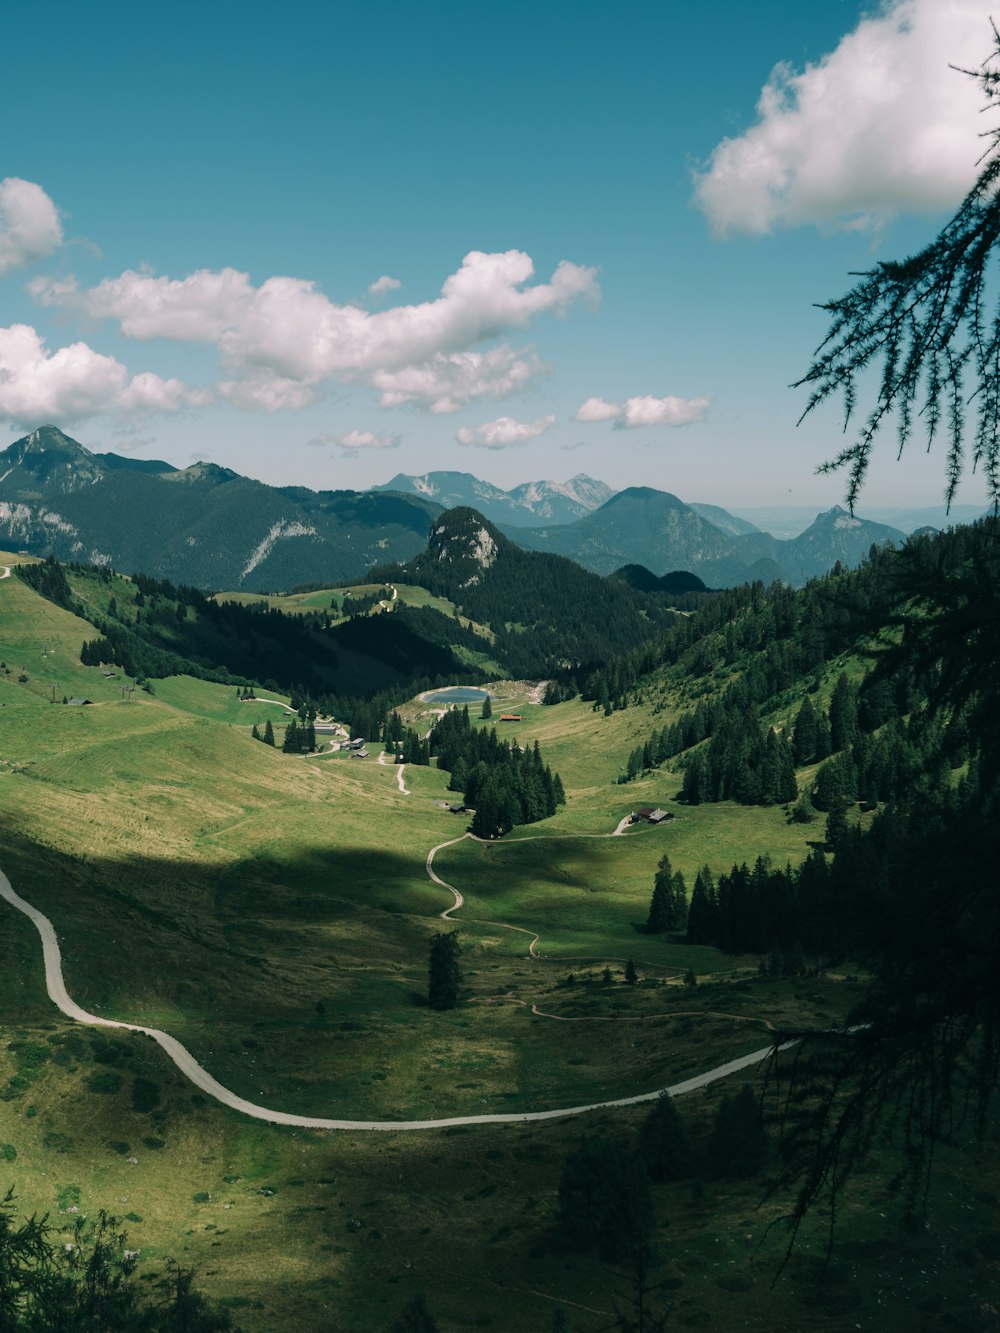 Una carretera sinuosa en medio de un exuberante valle verde